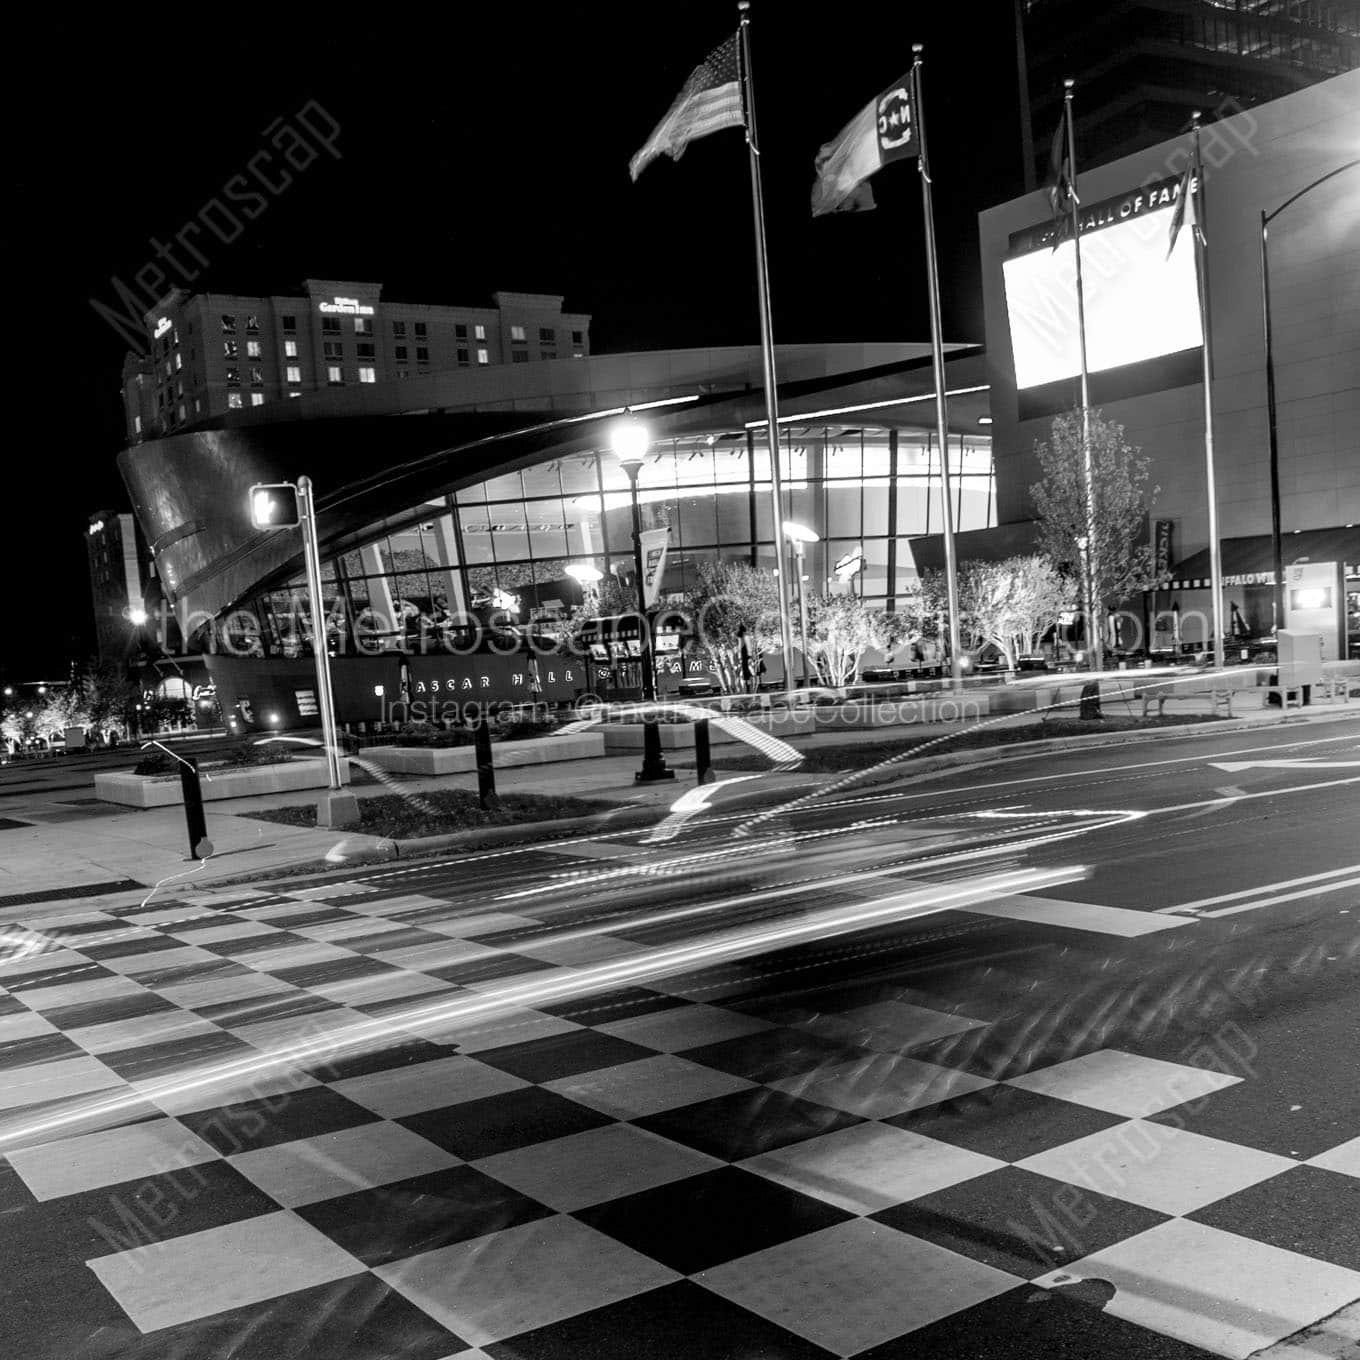 checkered crosswalk nascar hall of fame Black & White Office Art